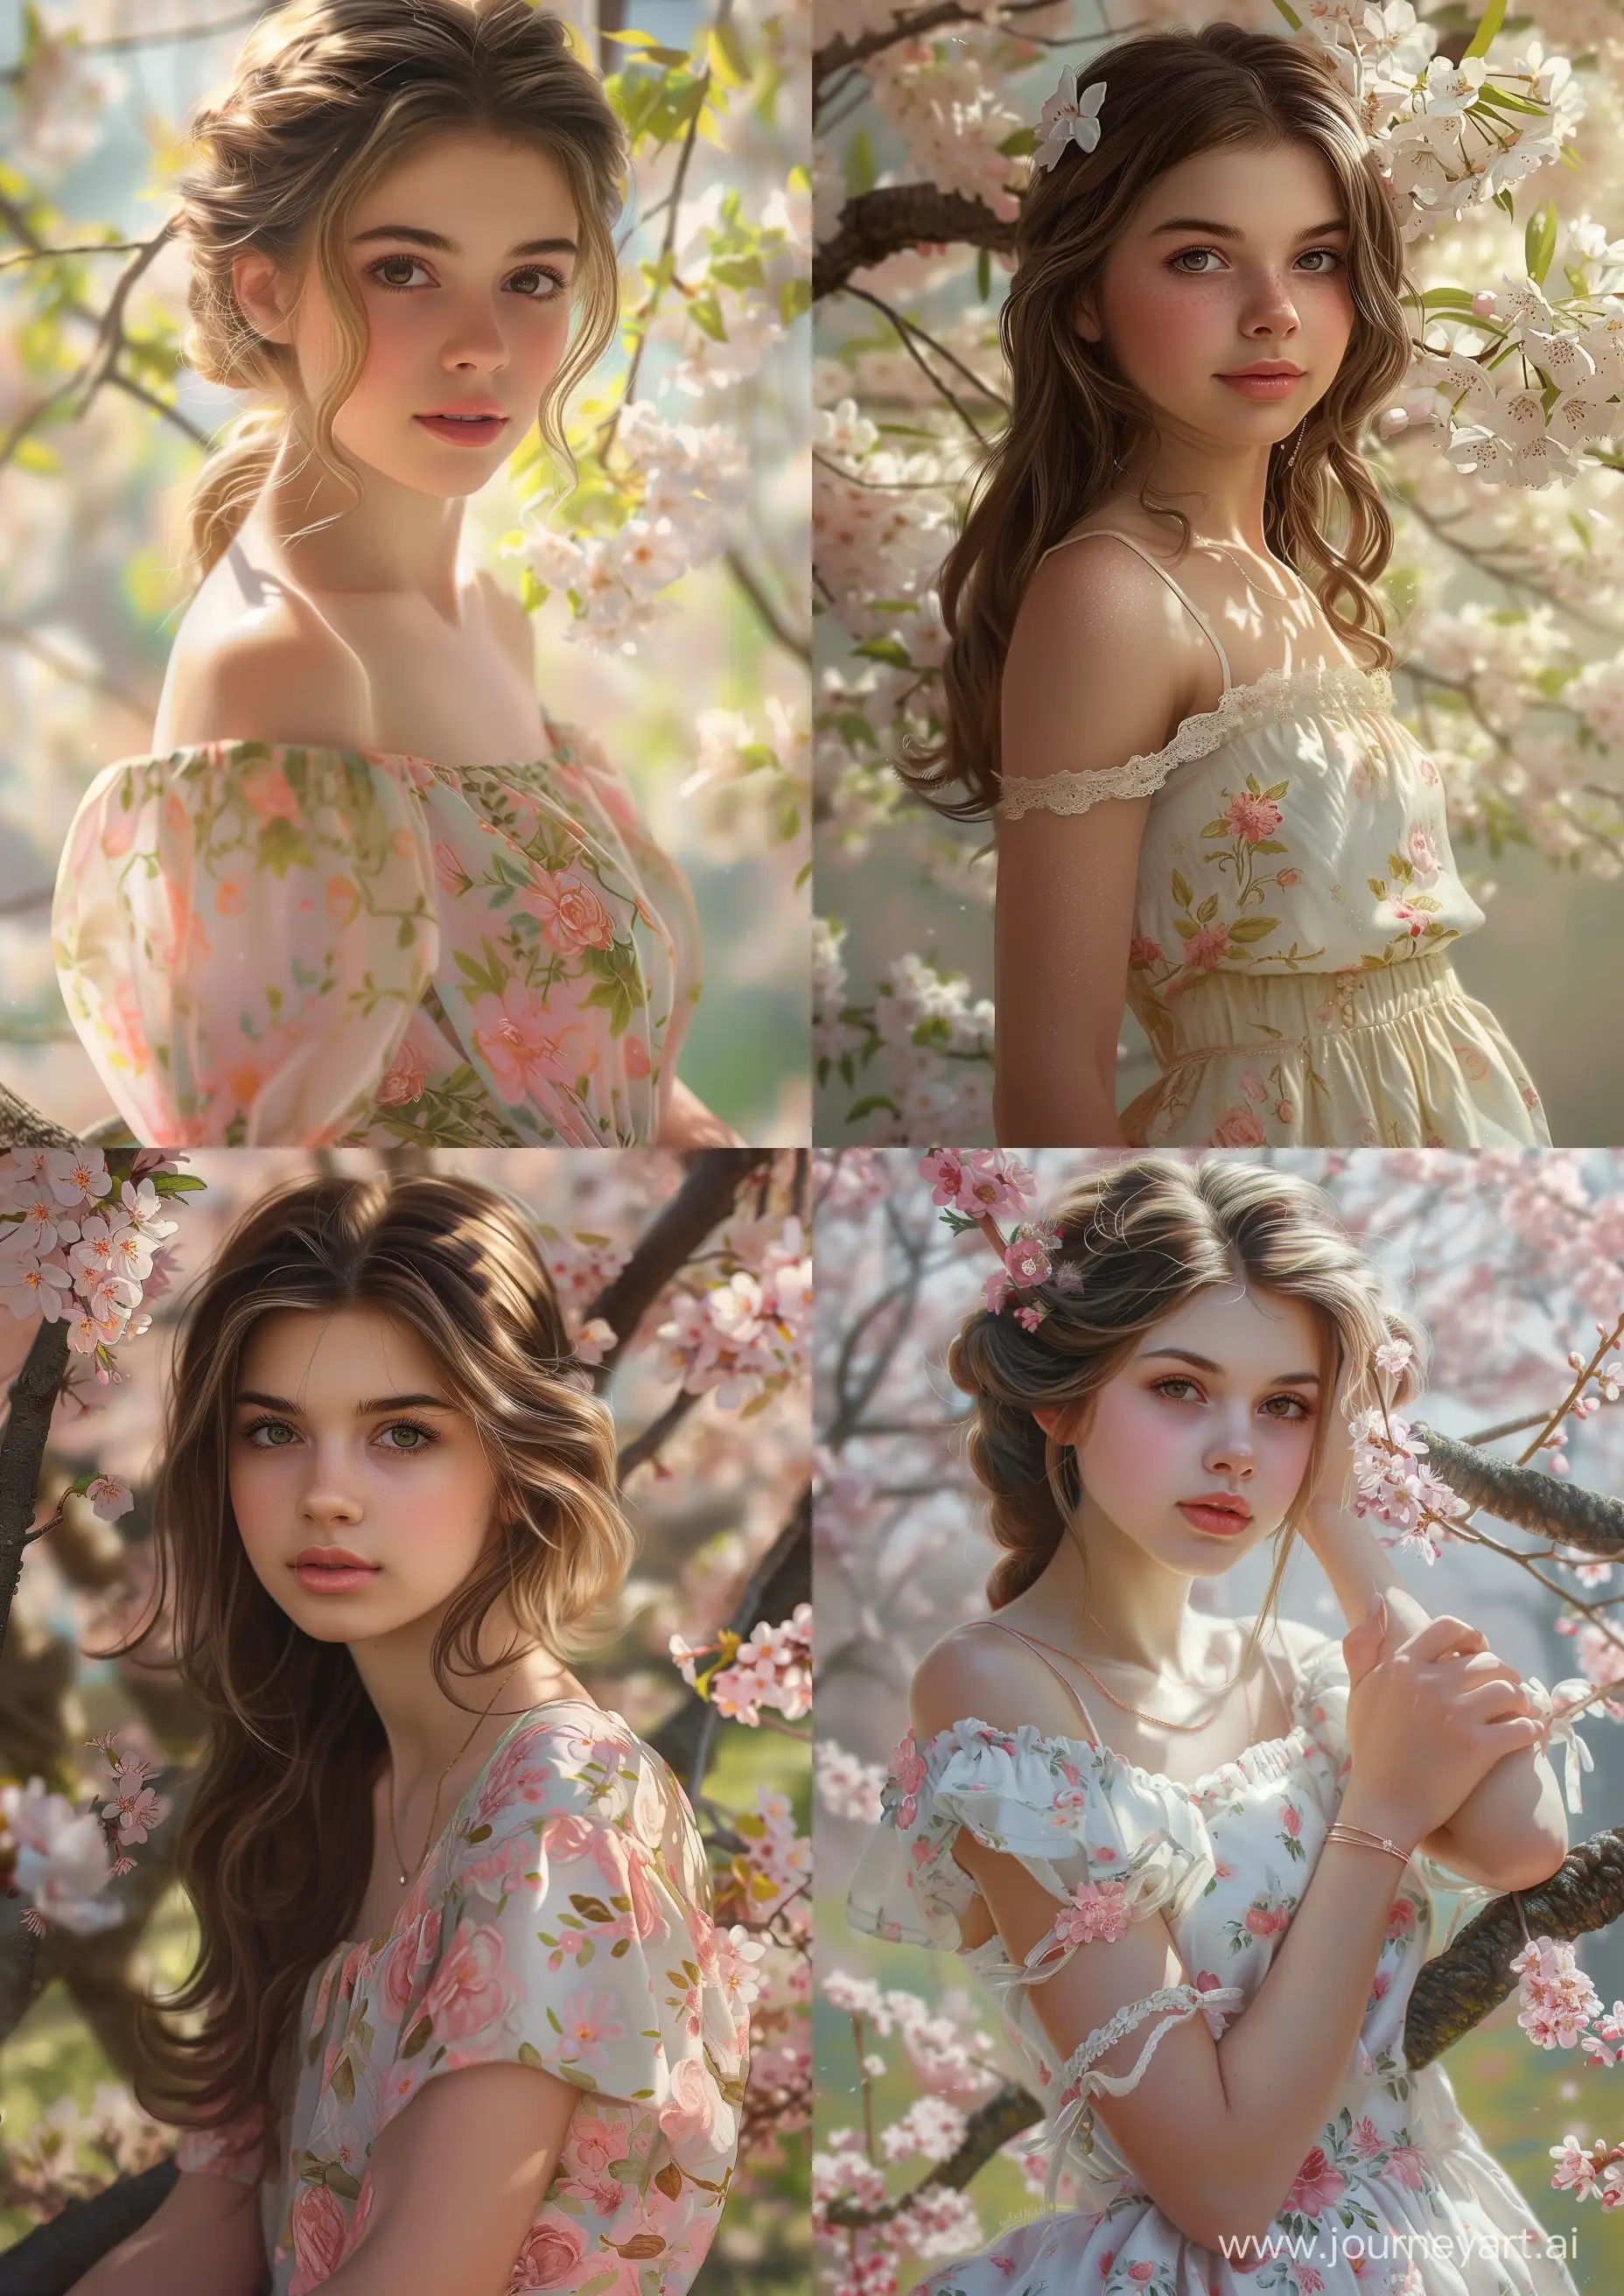 Stunning-17YearOld-in-Spring-Dress-April-Photorealism